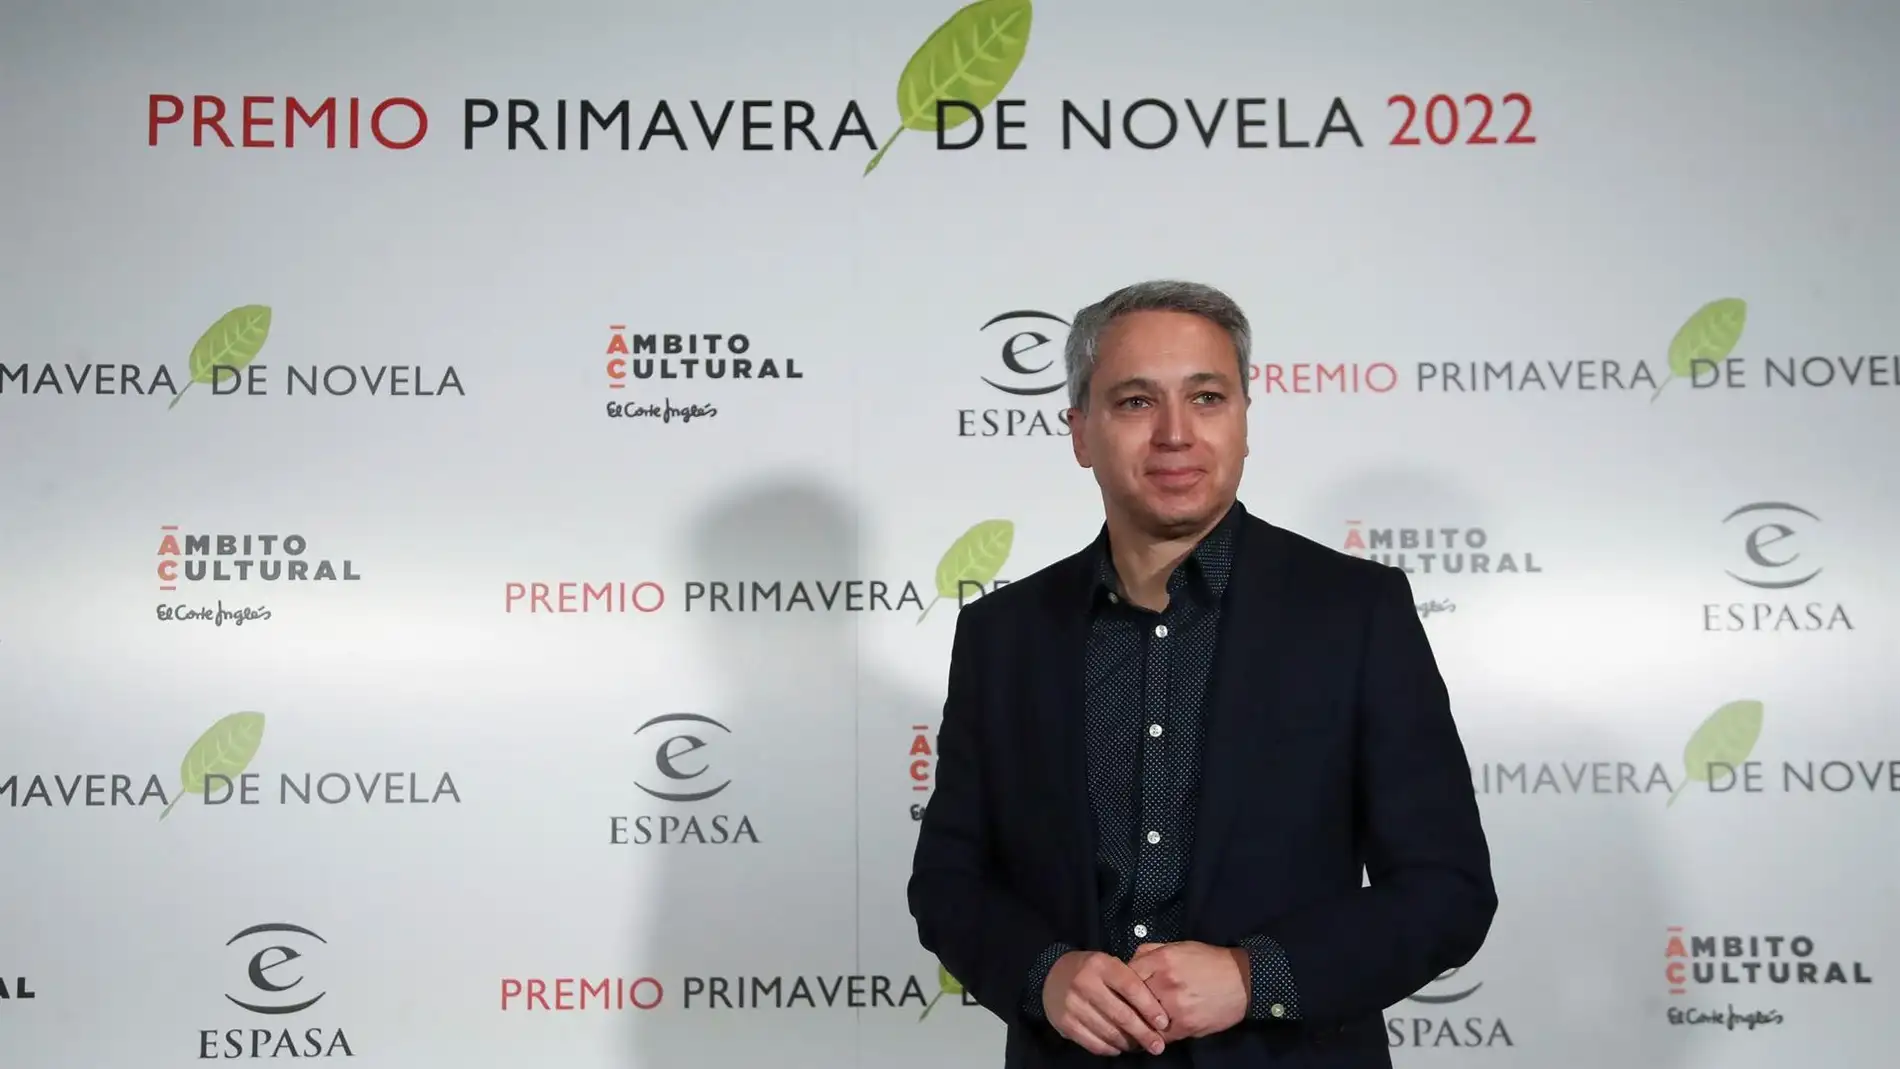 El periodista Vicente Vallés posa tras ser proclamado ganador del Premio Primavera de Novela 2022 por su obra "Operación Kazán", en el espacio "Ámbito Cultural" en Madrid